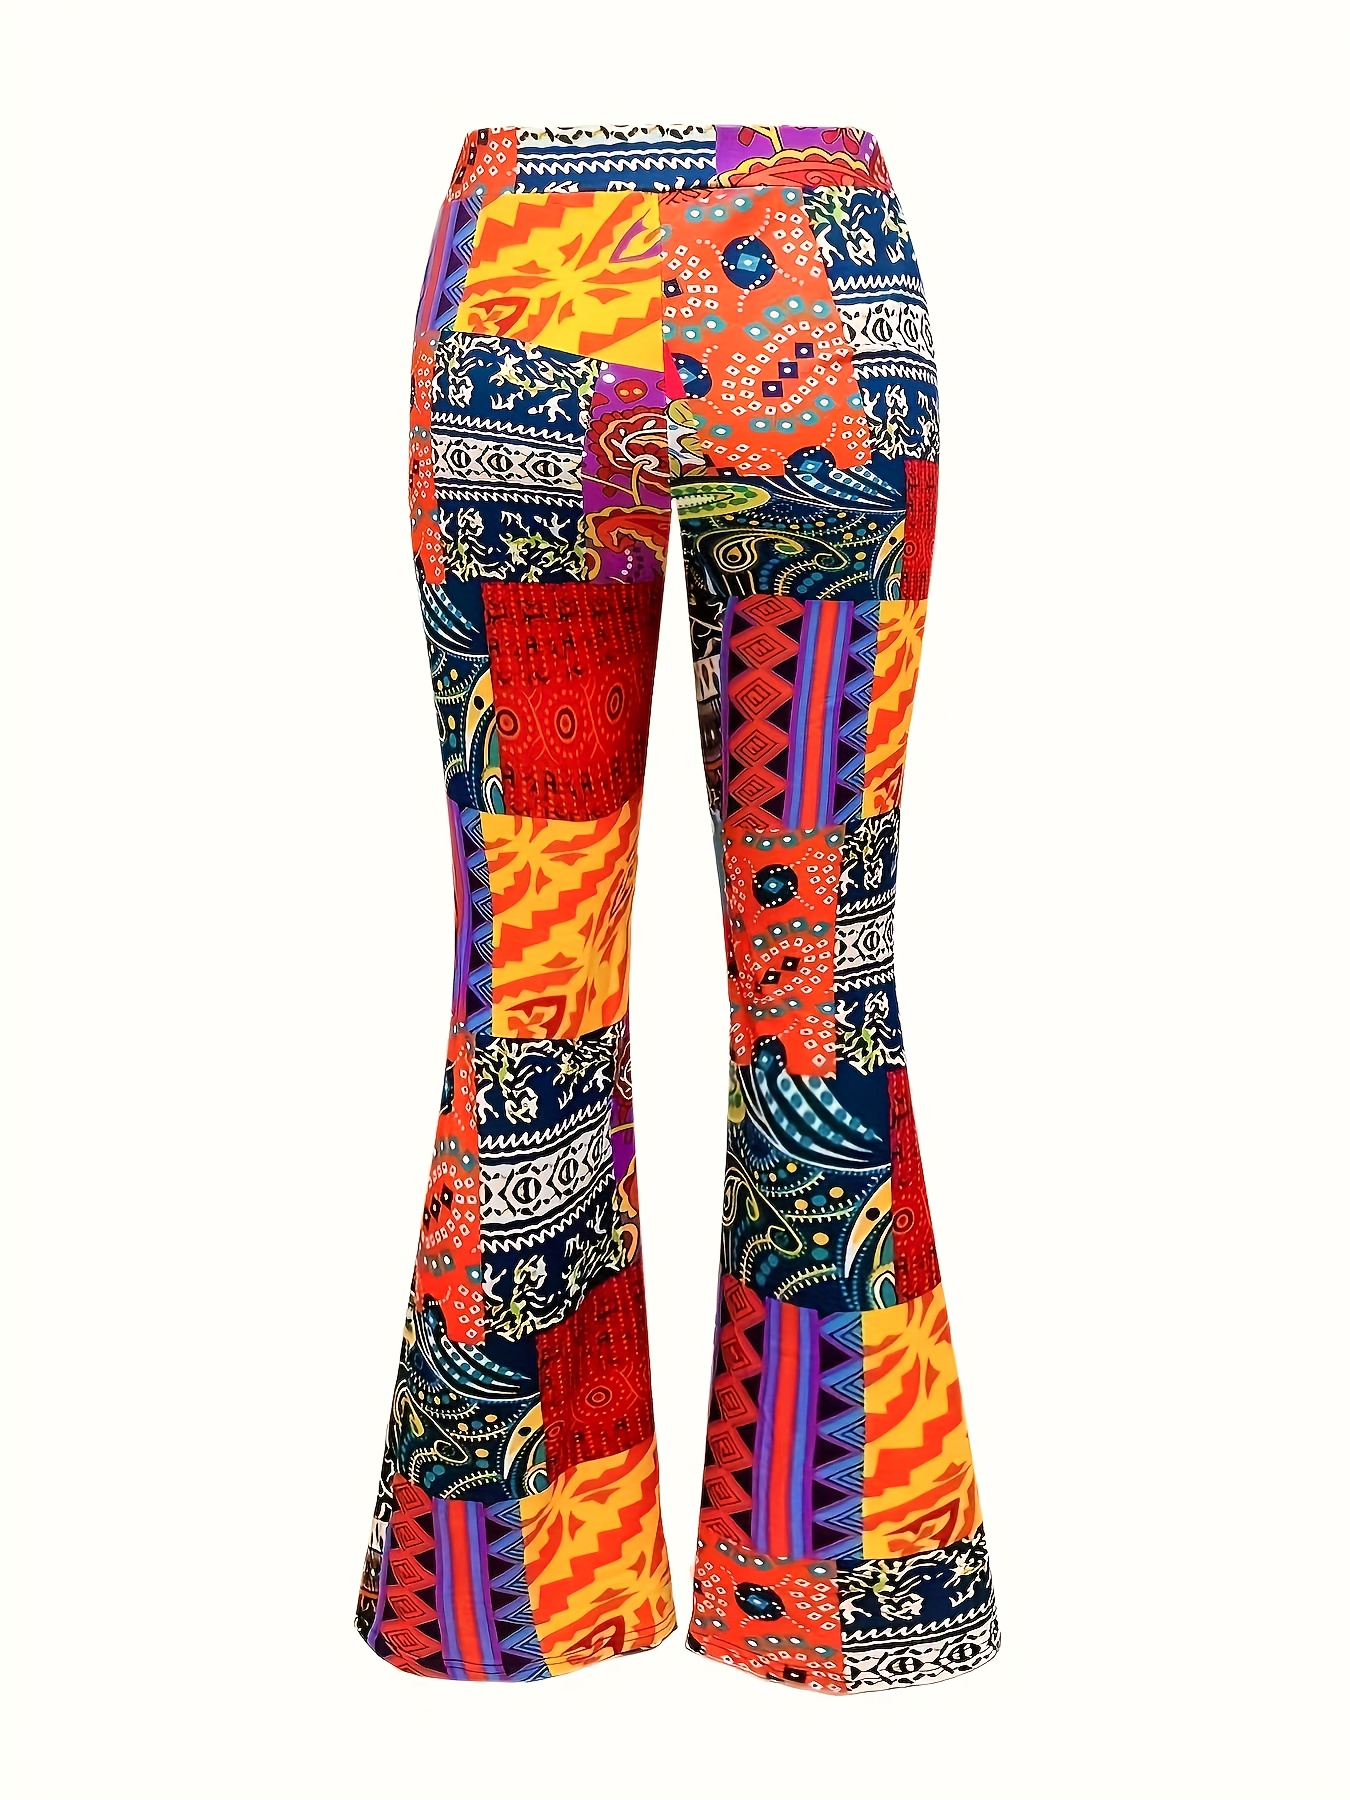 Women's Colorful Pants, Color Block Pants